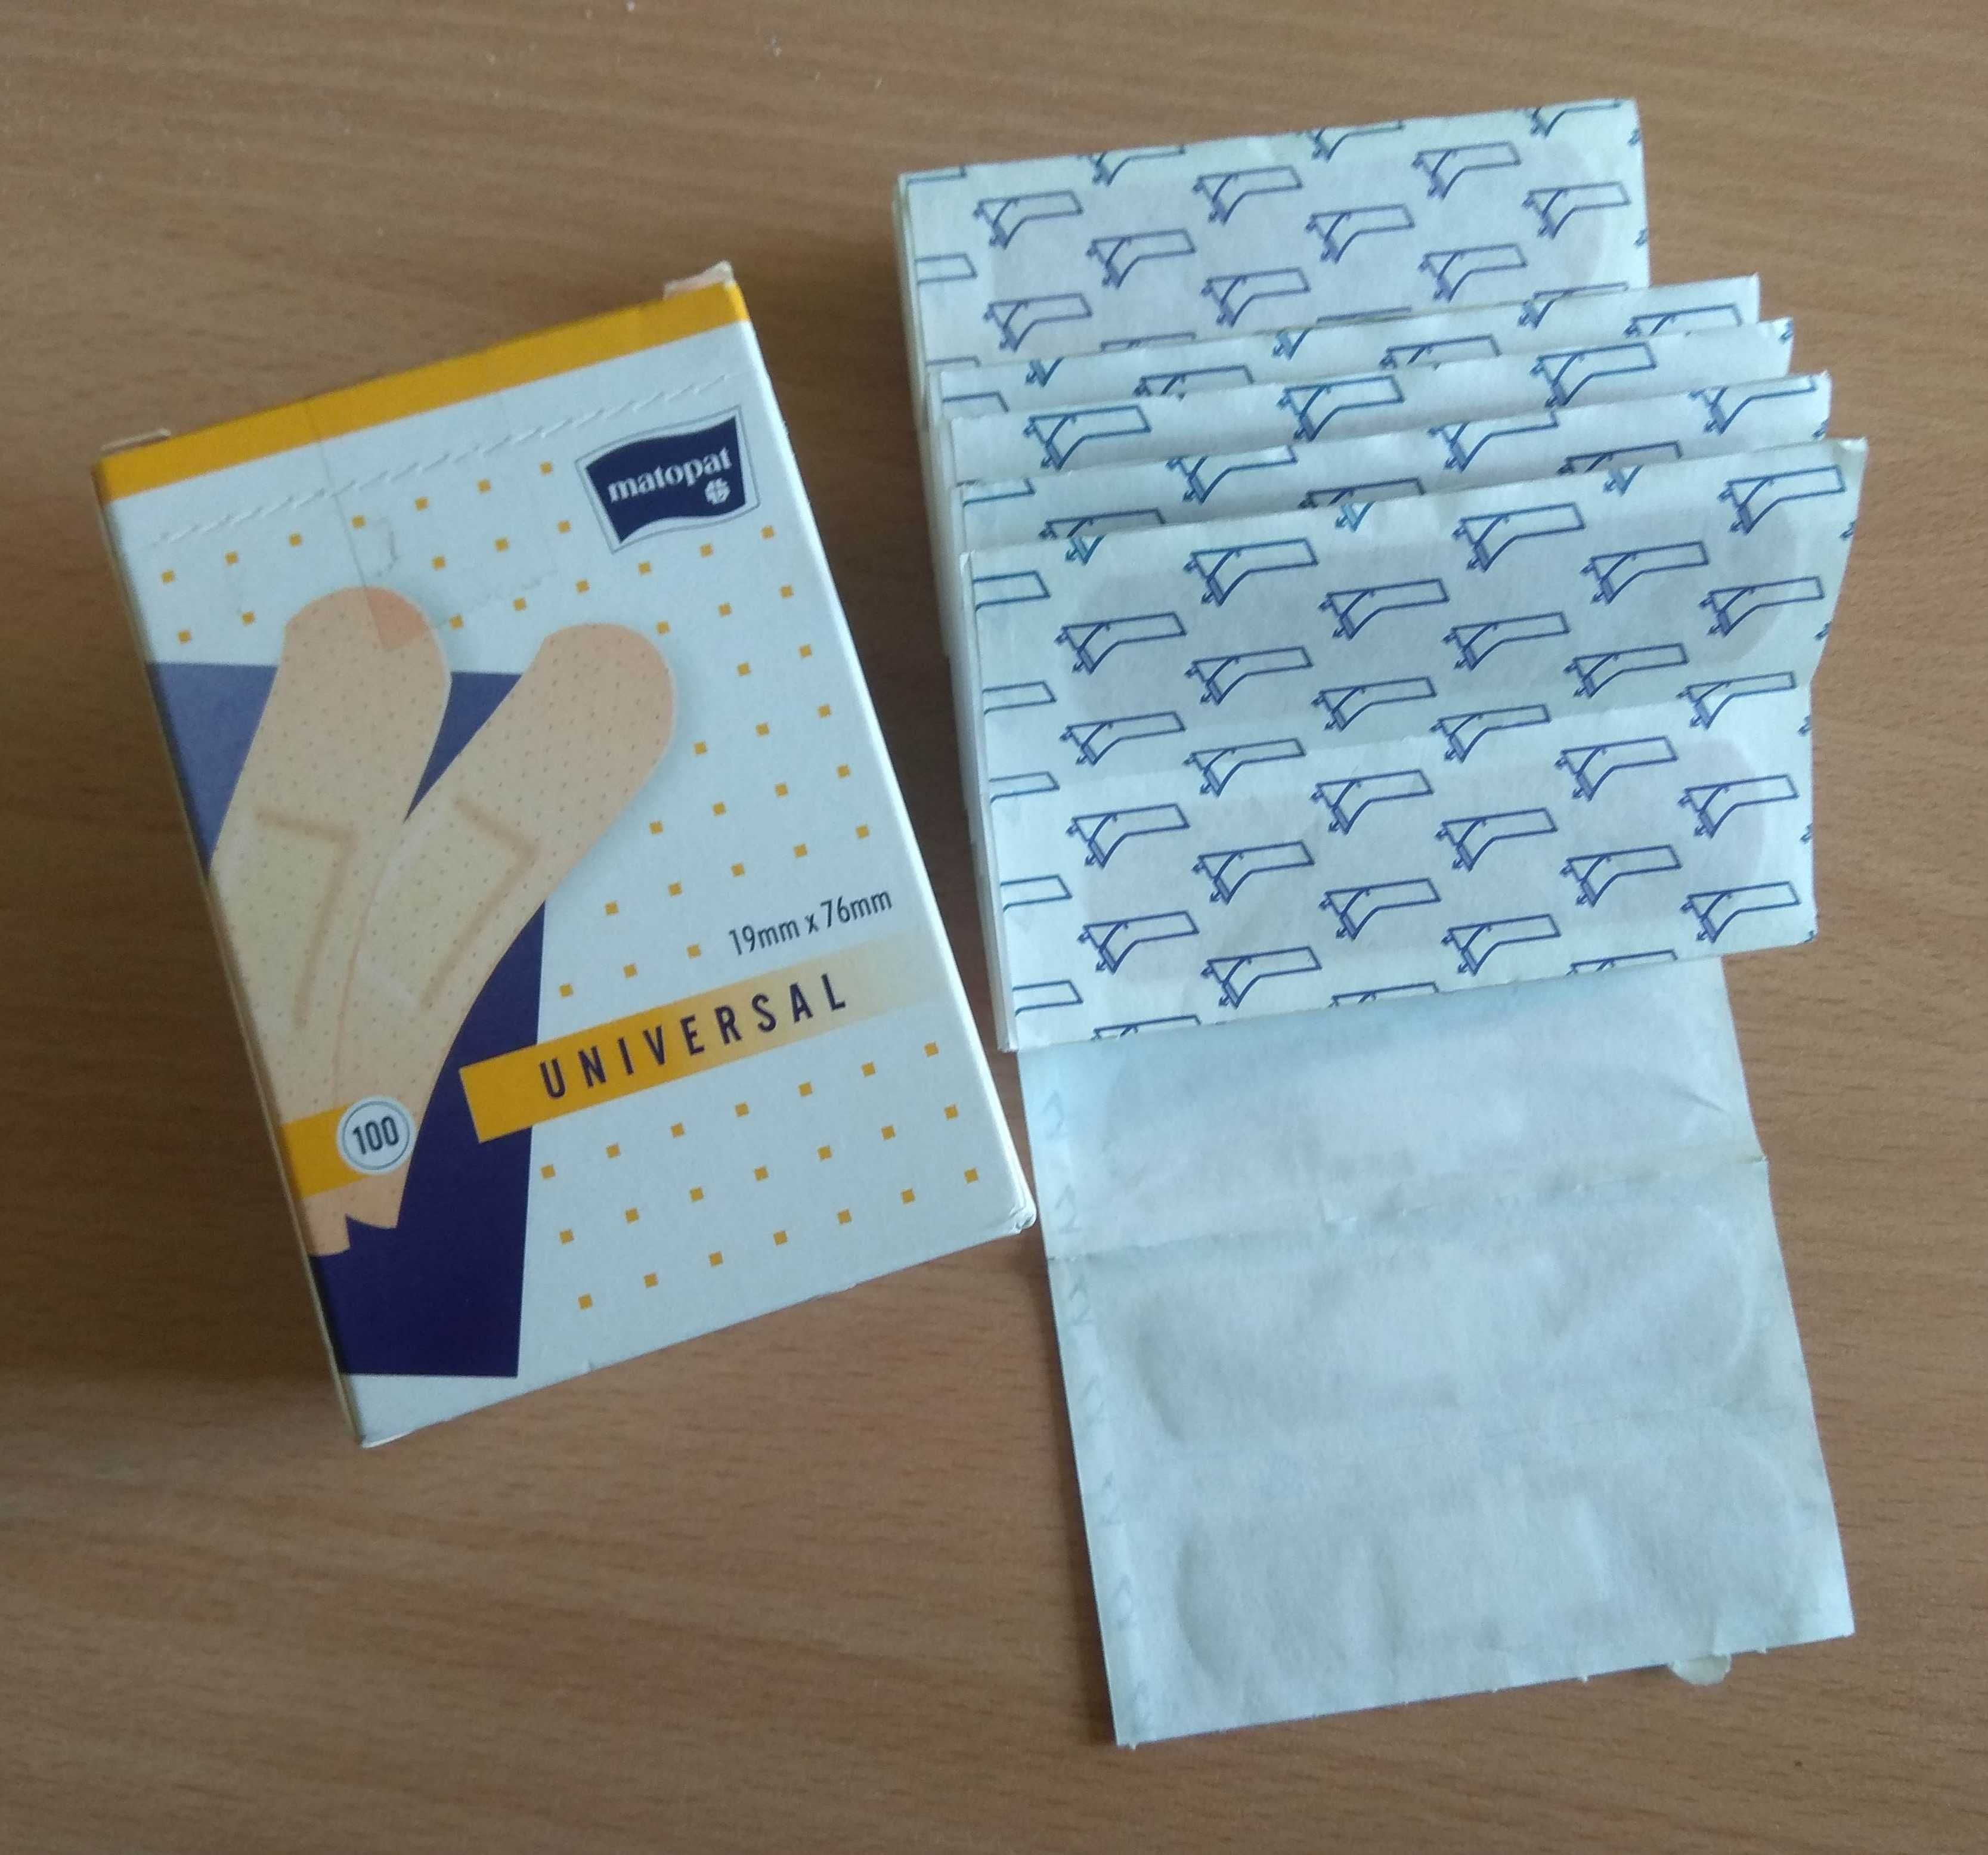 Пластирі медичні універсальні Matopat 19x76 мм, 100шт в упаковці.